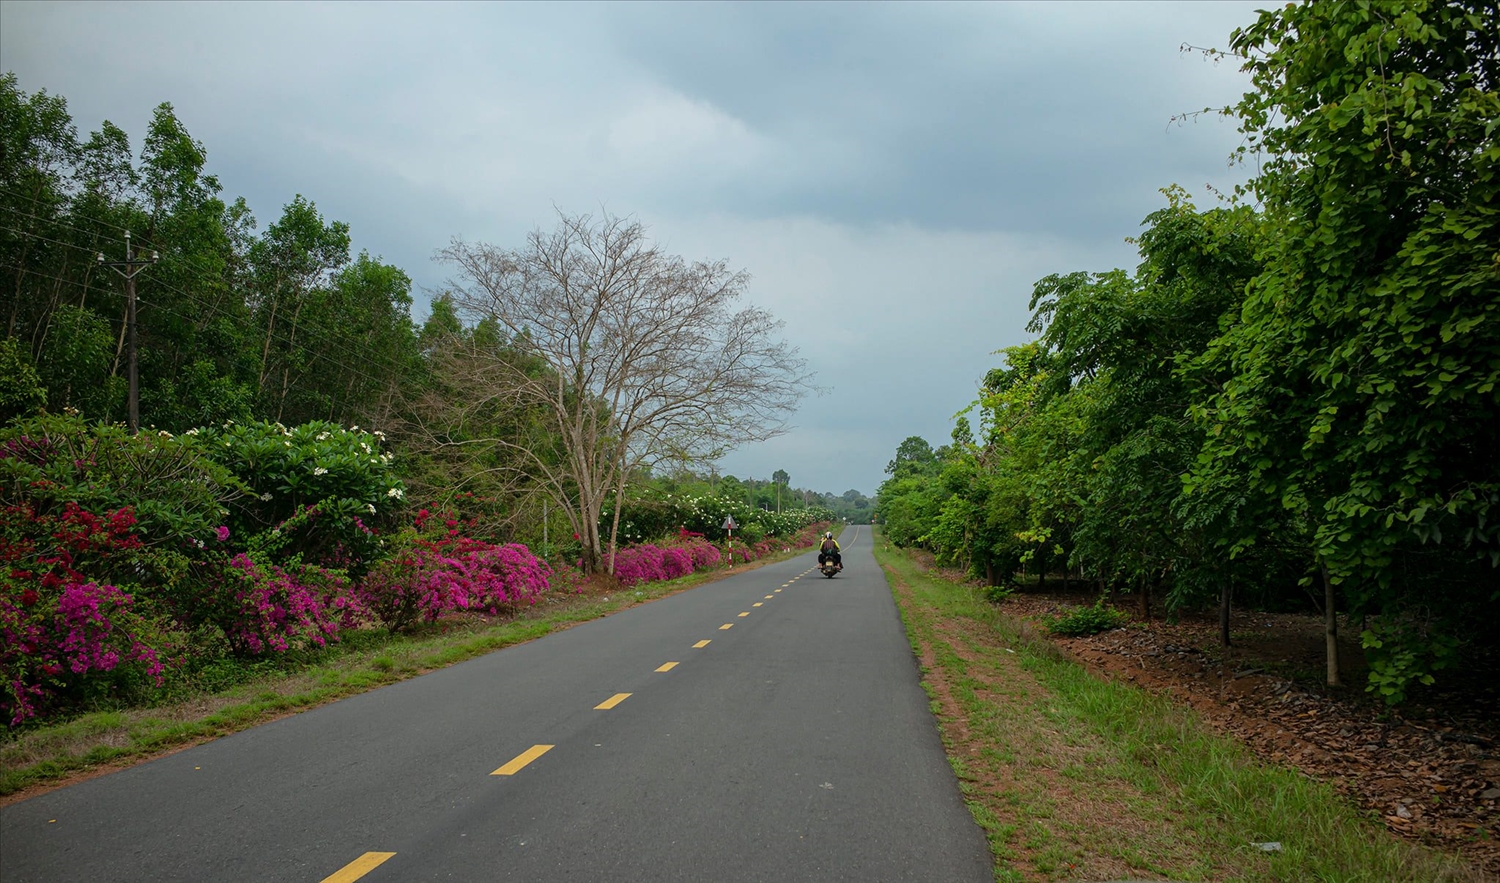 Đường vào rừng Mã Đà - Khu bảo tồn thiên nhiên văn hóa tỉnh Đồng Nai đầu mùa mưa . Hoa giấy 2 bên đường trải dài ngút ngàn đỏ ối xen lẫn màu hoa sứ trắng điểm xuyết.